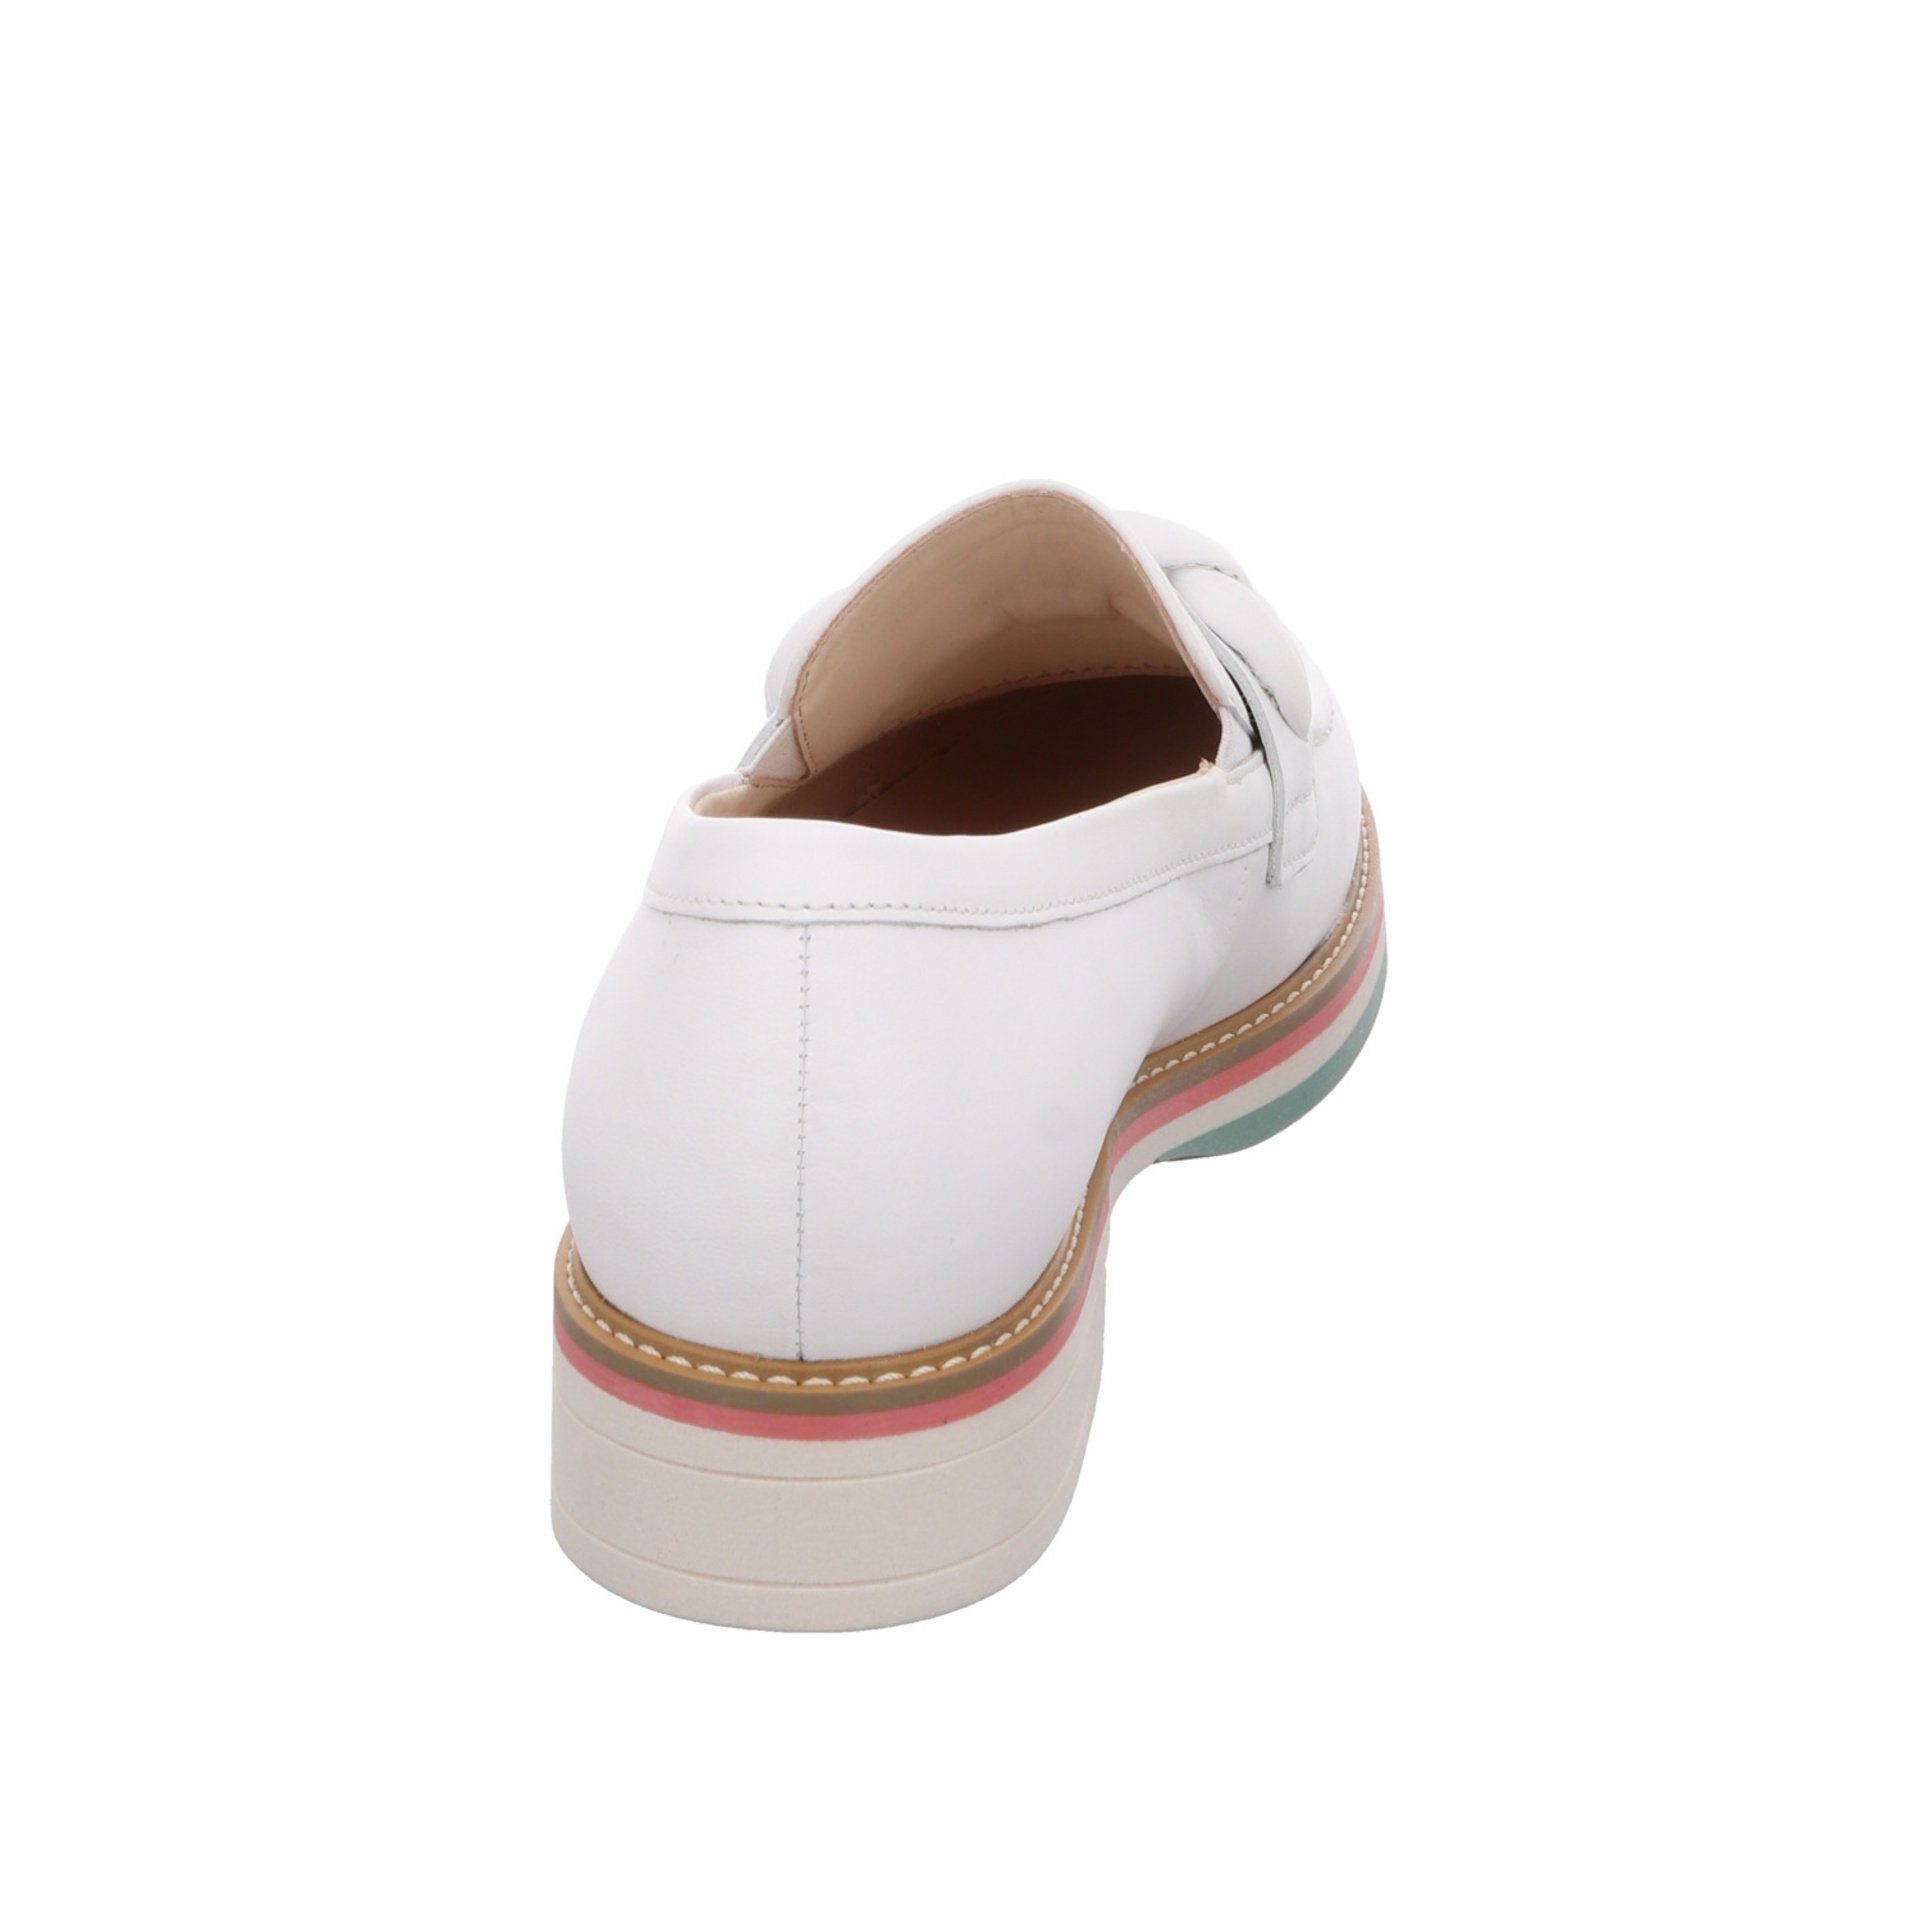 Damen Schuhe (weiss Slipper Gabor / Glattleder Florenz Slipper 50) Slipper Weiß